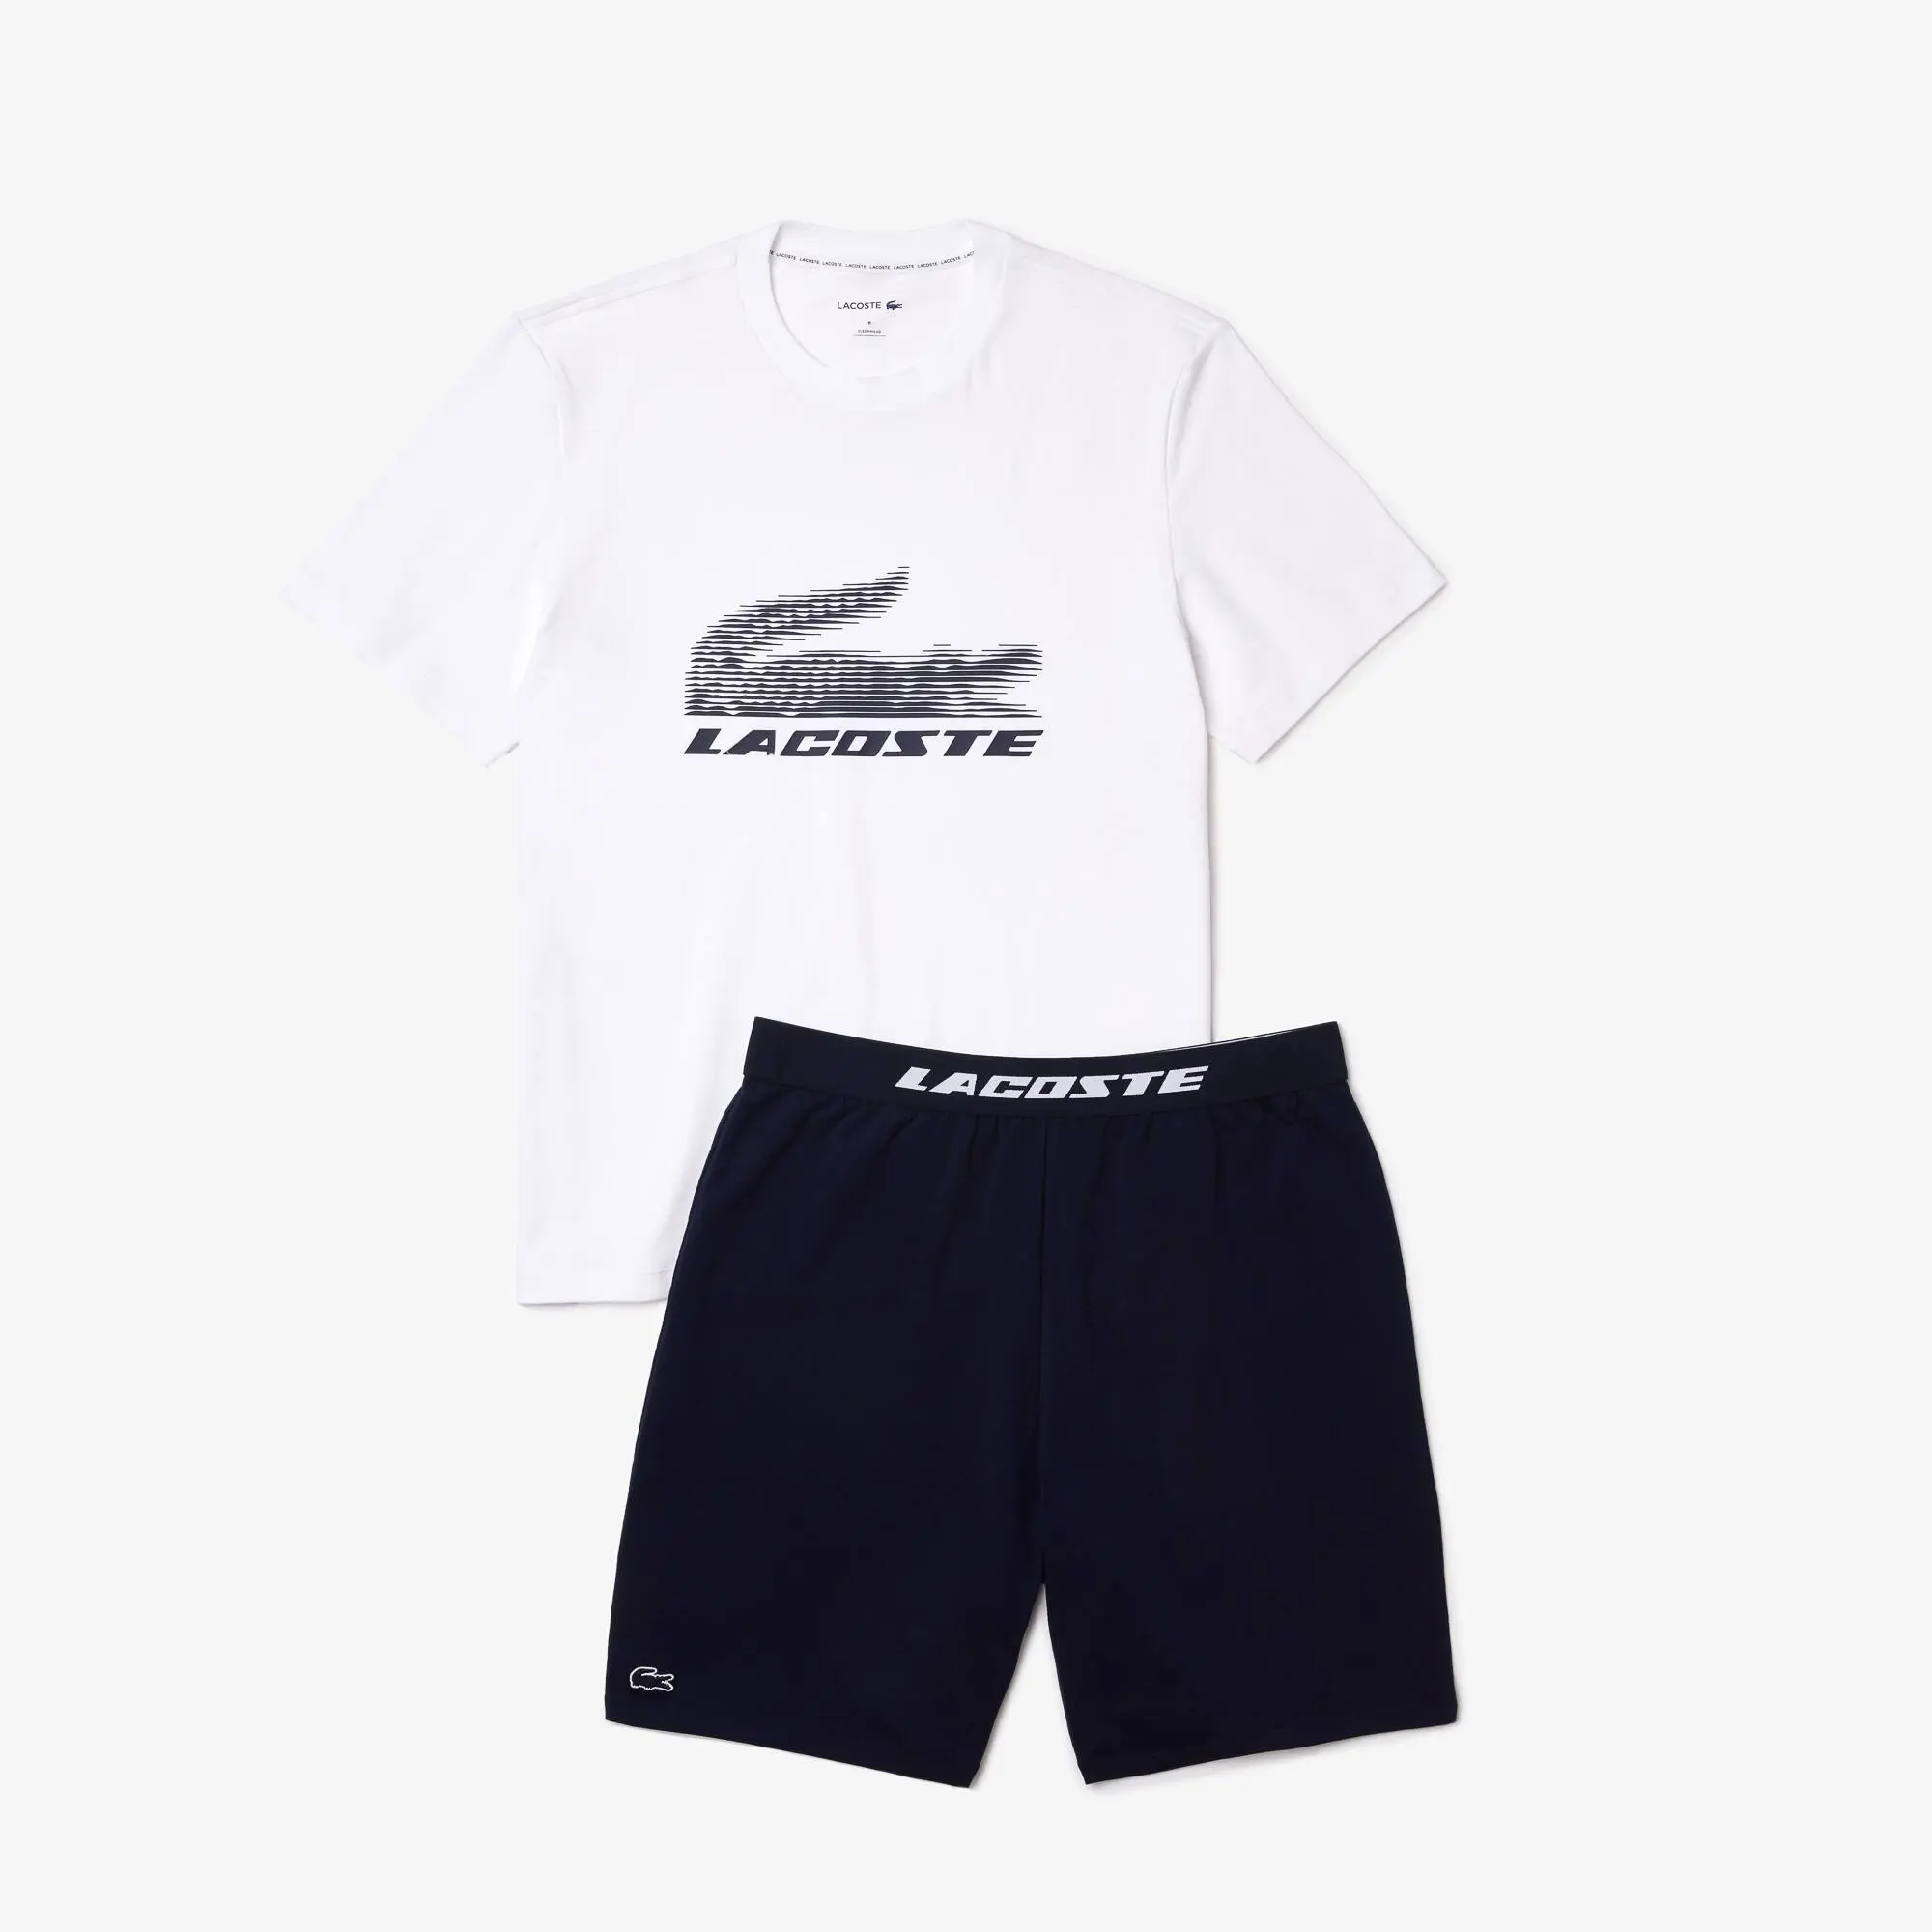 Lacoste Men’s Lacoste Stretch Cotton Short Pyjamas Set. 2